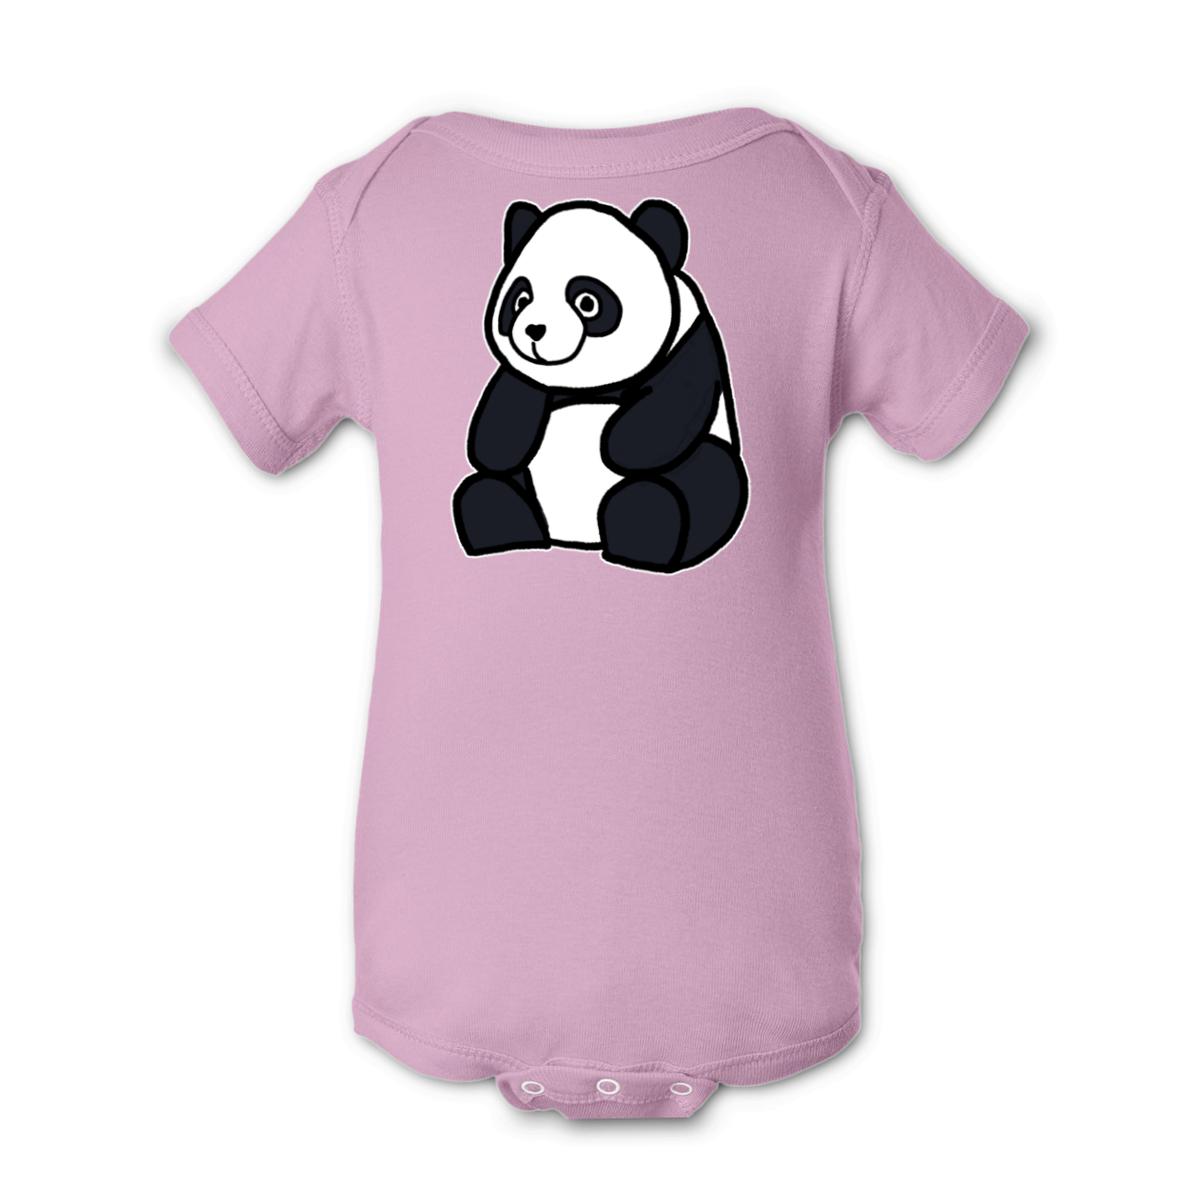 Panda Onesie 12M pink